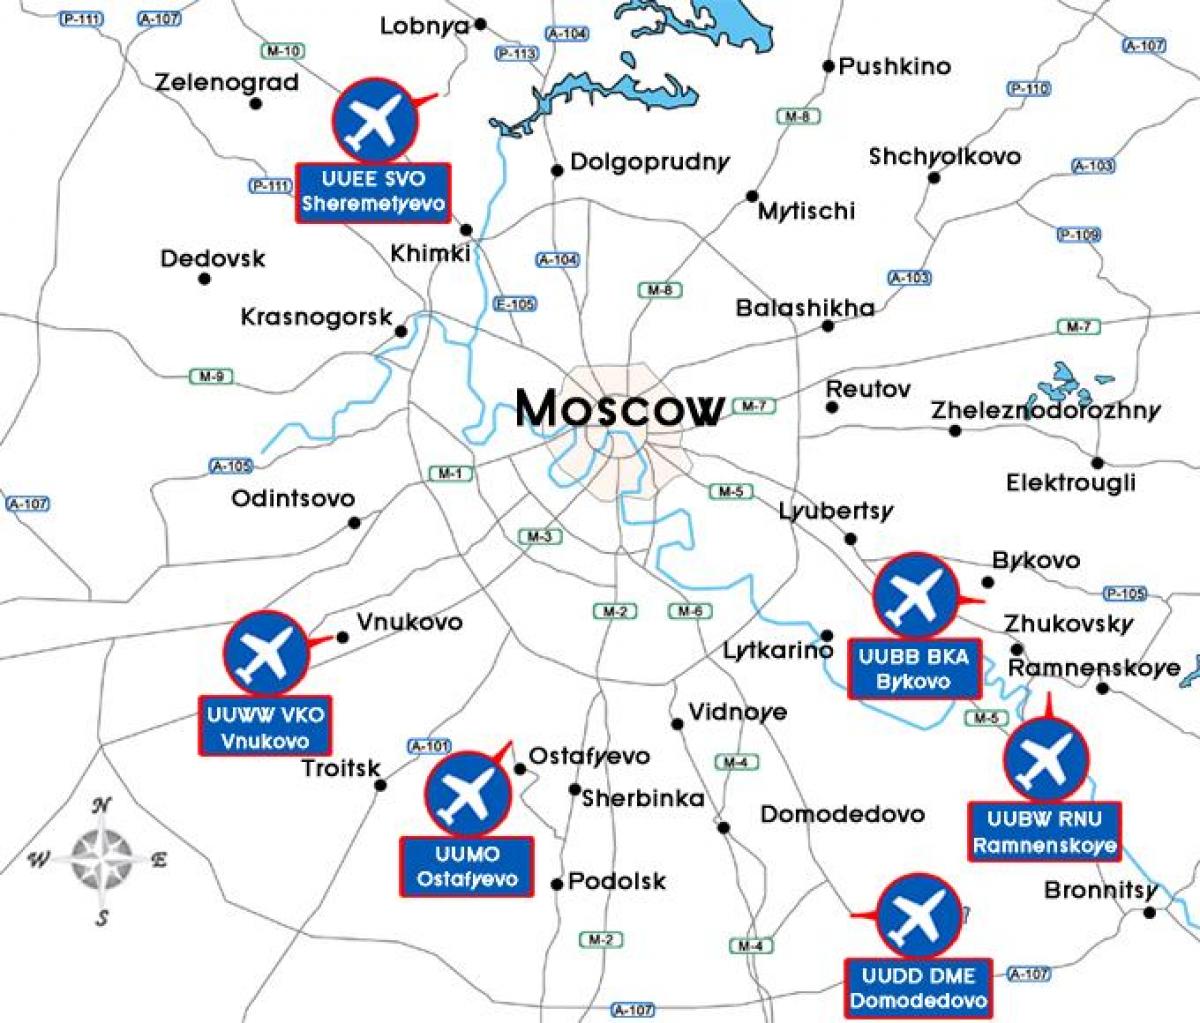 Moskovan lentokenttä kartta terminal